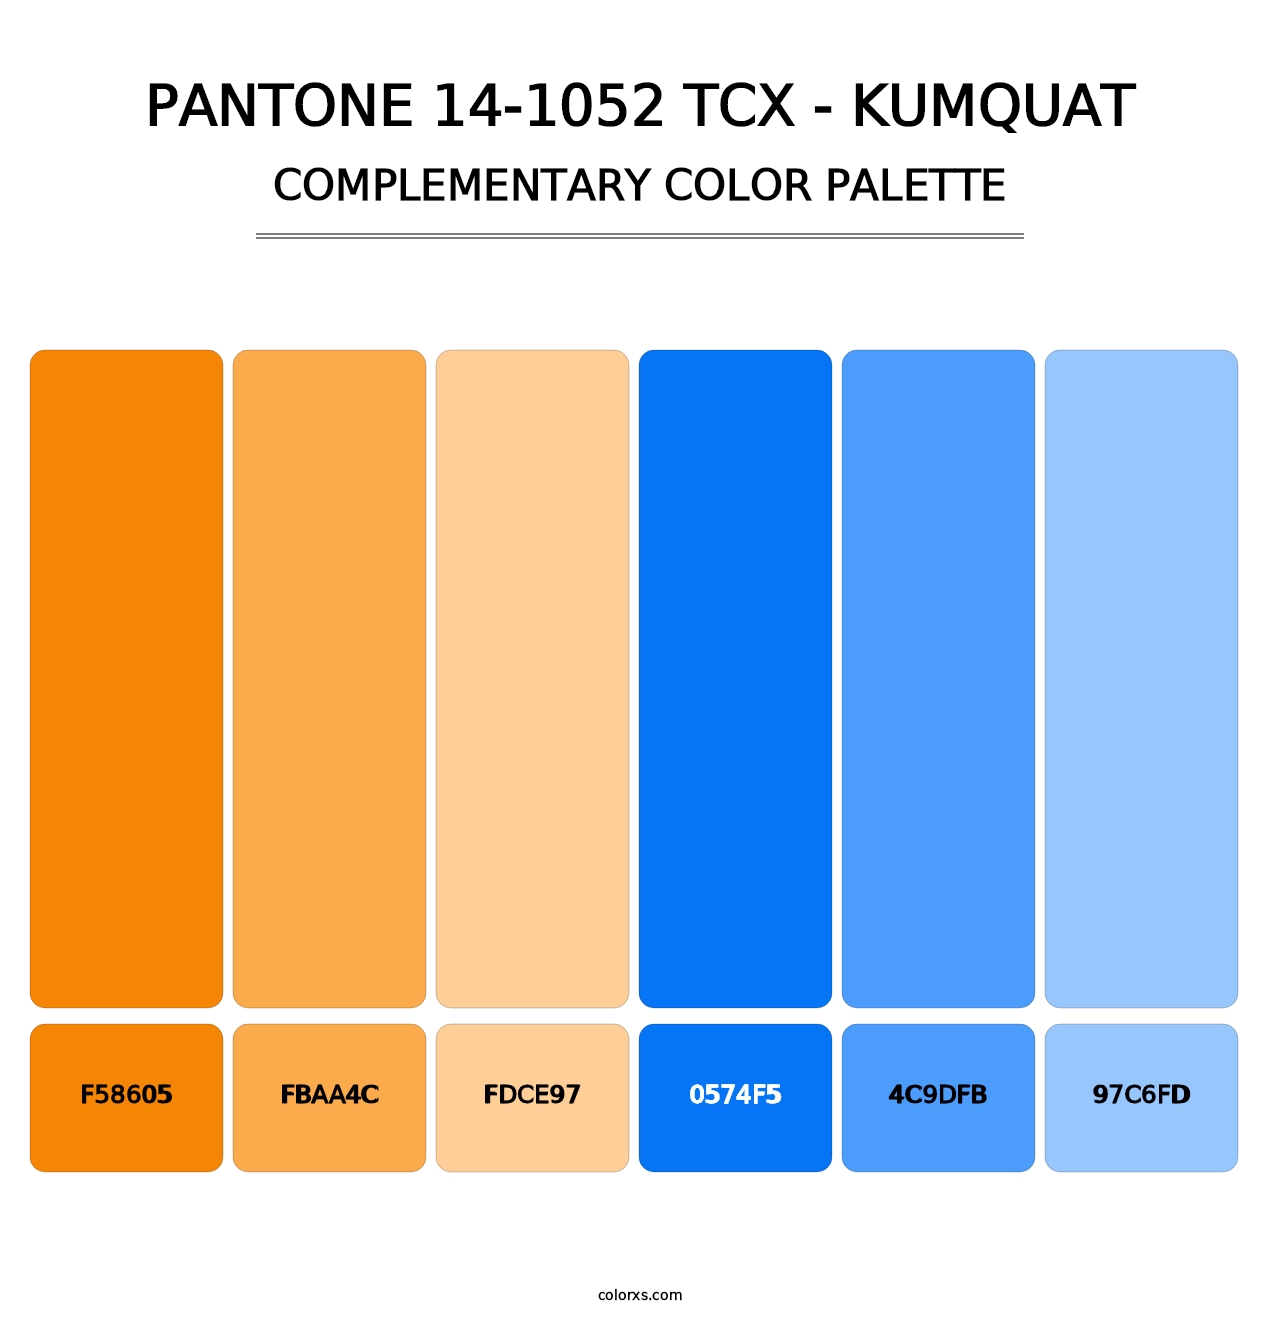 PANTONE 14-1052 TCX - Kumquat - Complementary Color Palette